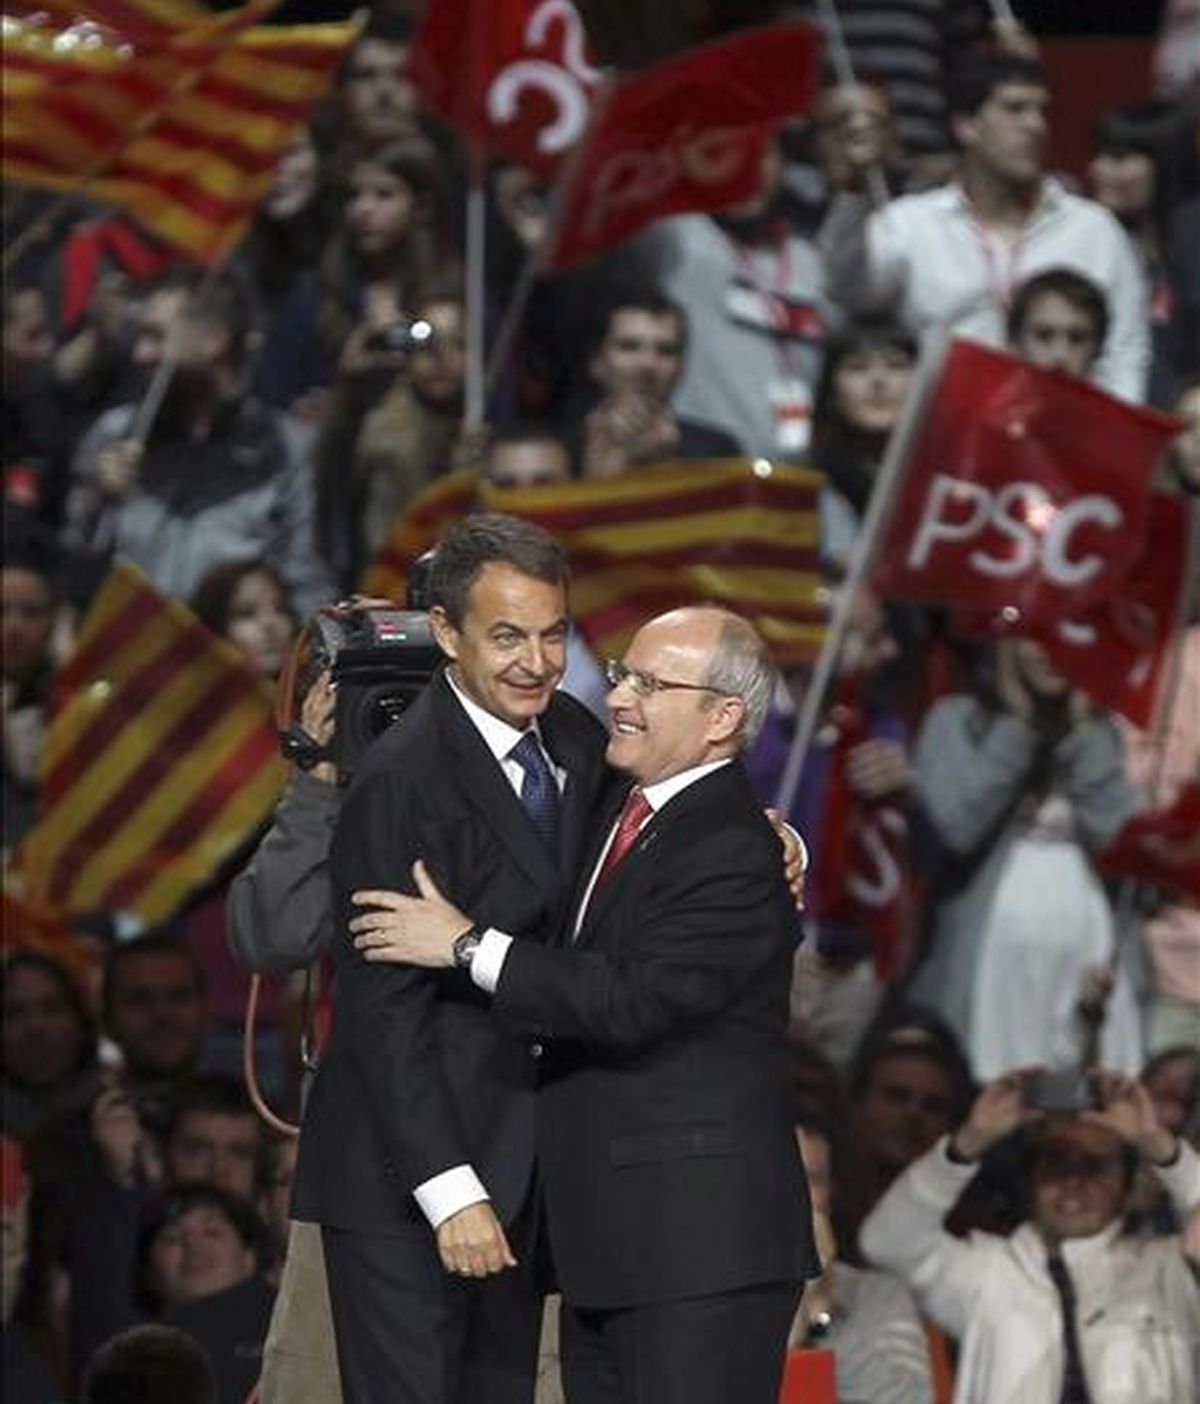 El presidente del Gobierno José Luis Rodríguez Zapatero (i), su homólogo de la Generalitat y candidato a la reelección por los socialistas catalanes (PSC), José Montilla, se saludan durante el mitin central de campaña celebrado esta noche en el Palau Sant Jordi de Barcelona. EFE